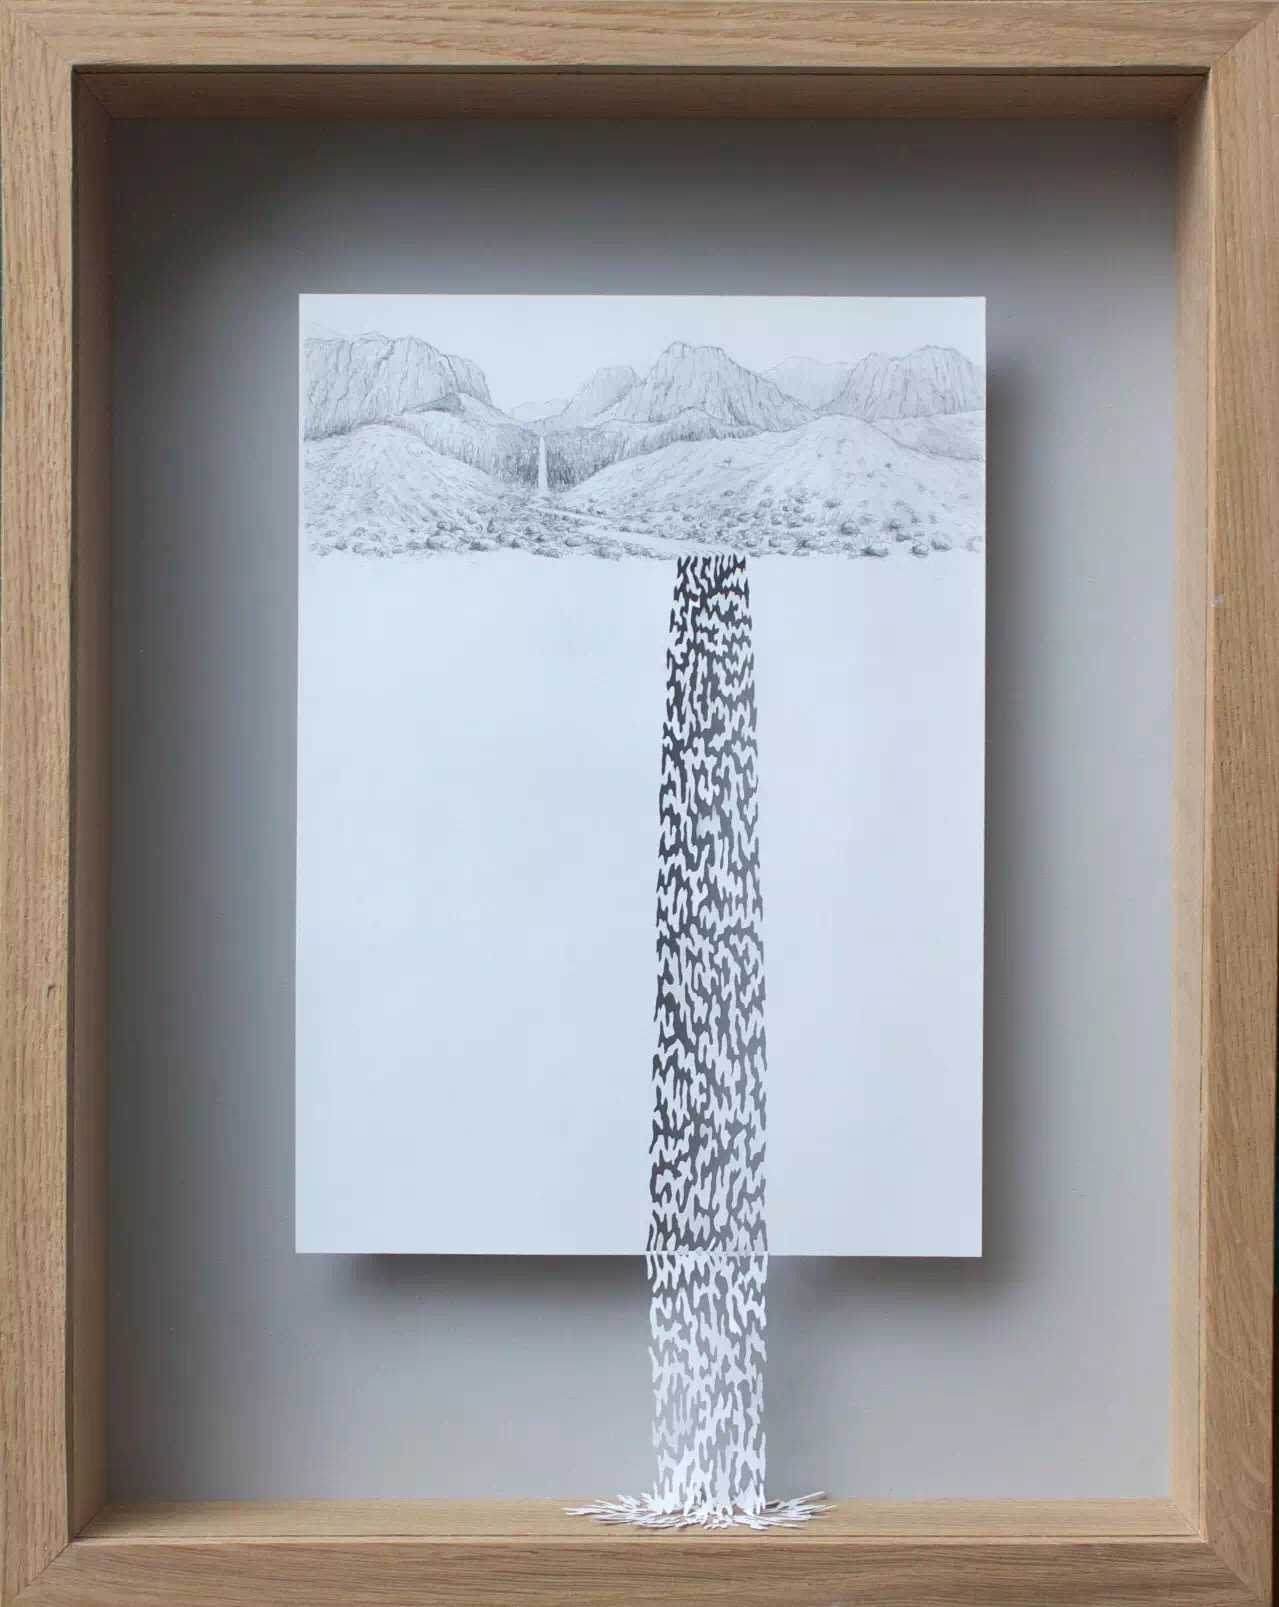 丹麦剪纸艺术家peter callesen,以a4纸为媒介进行创作,把一张绝对二维